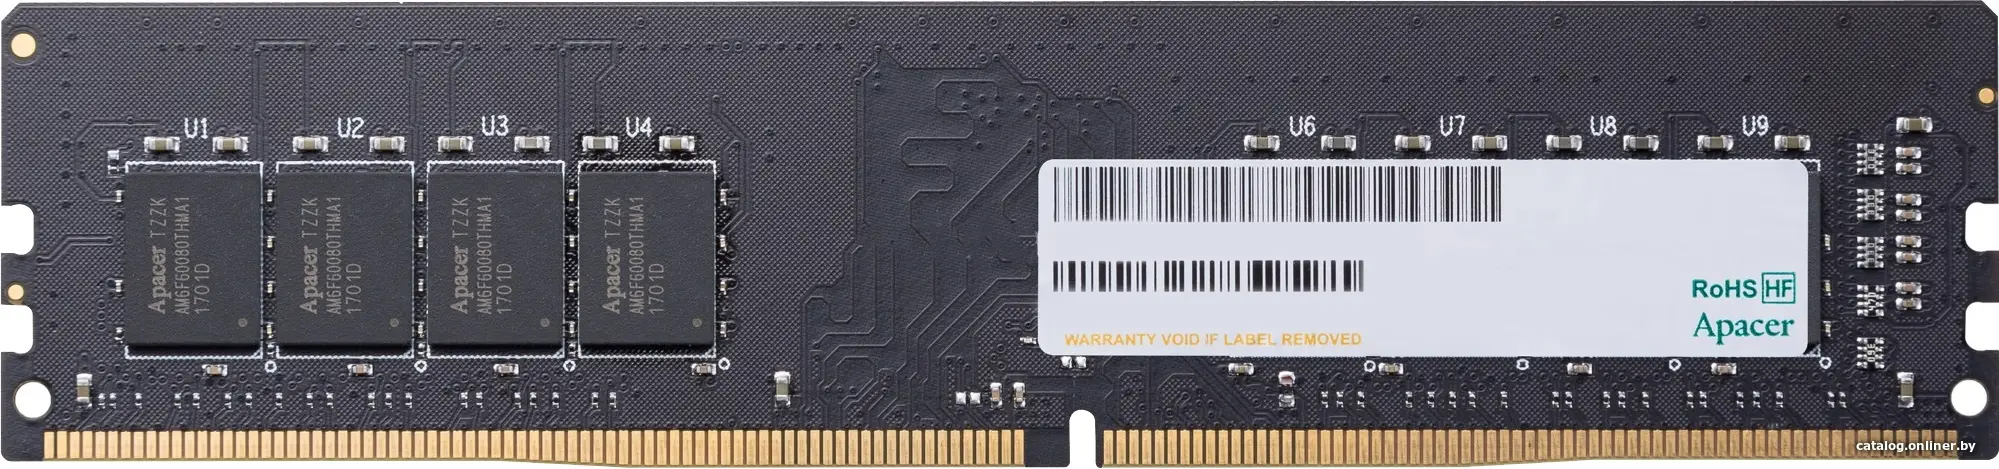 Купить Память DDR4 16Gb PC4-21300 Apacer EL.16G2V.GNH, цена, опт и розница